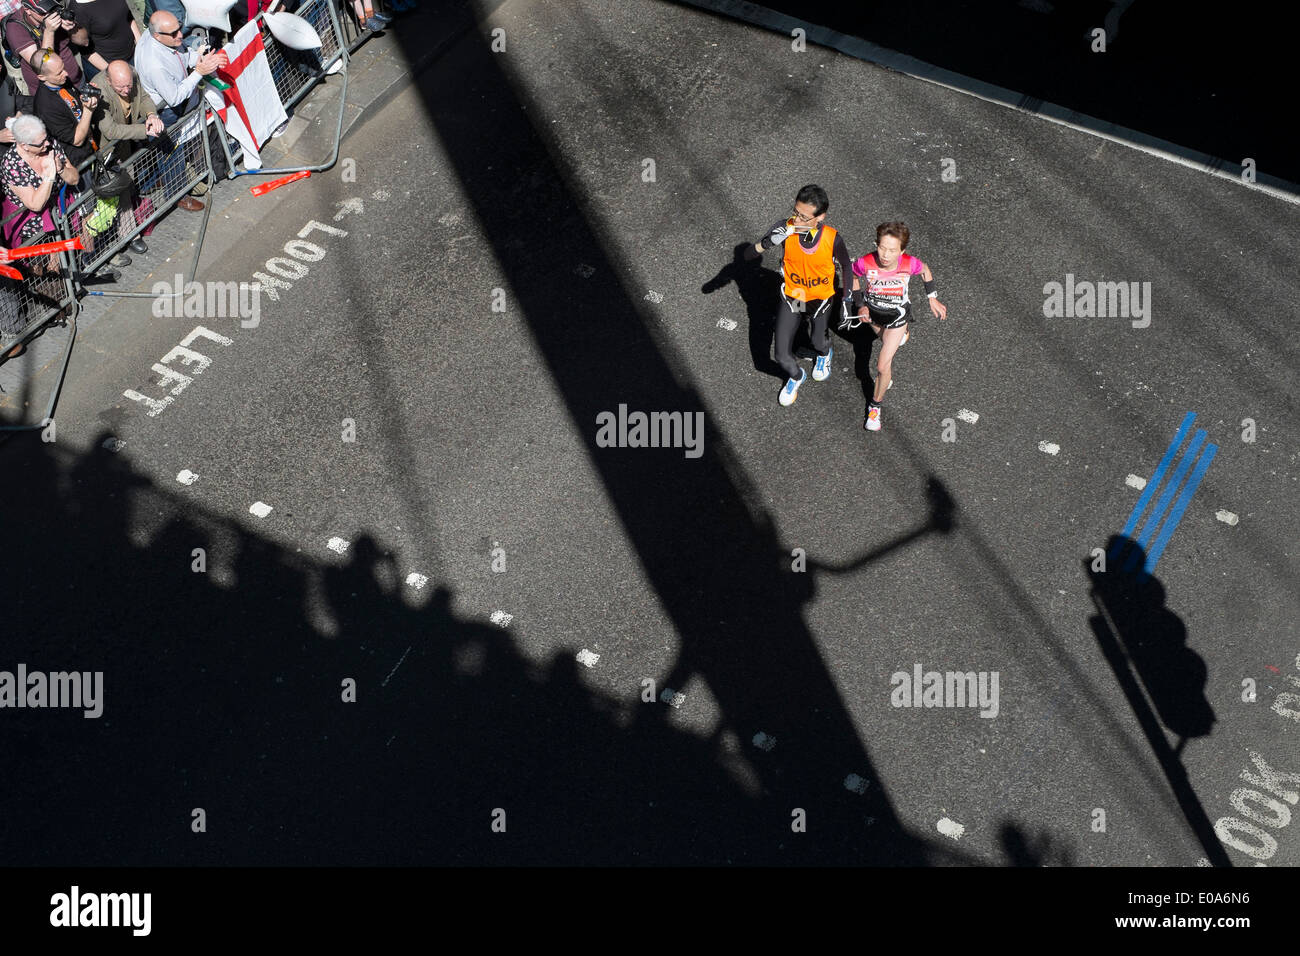 Wettbewerber in den London-Marathon 2014. Blinden und sehbehinderten Läufer und Guide. Stockfoto